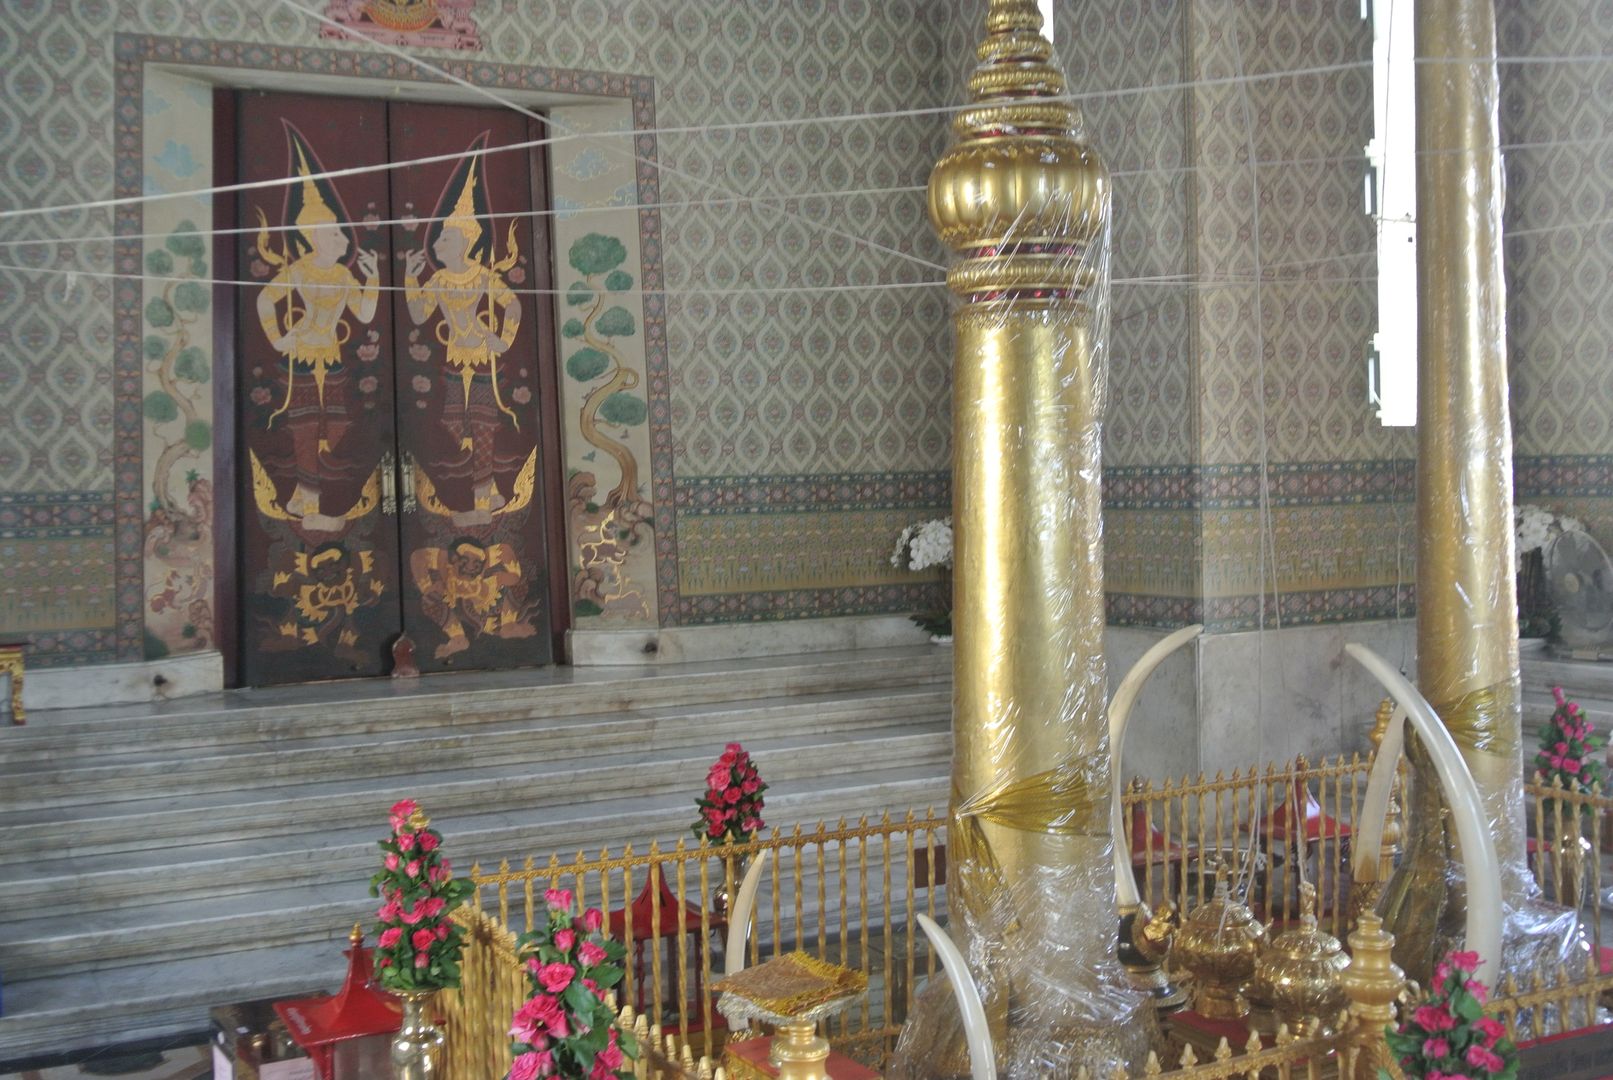 San Lak Mueang, City Pillar Shrine